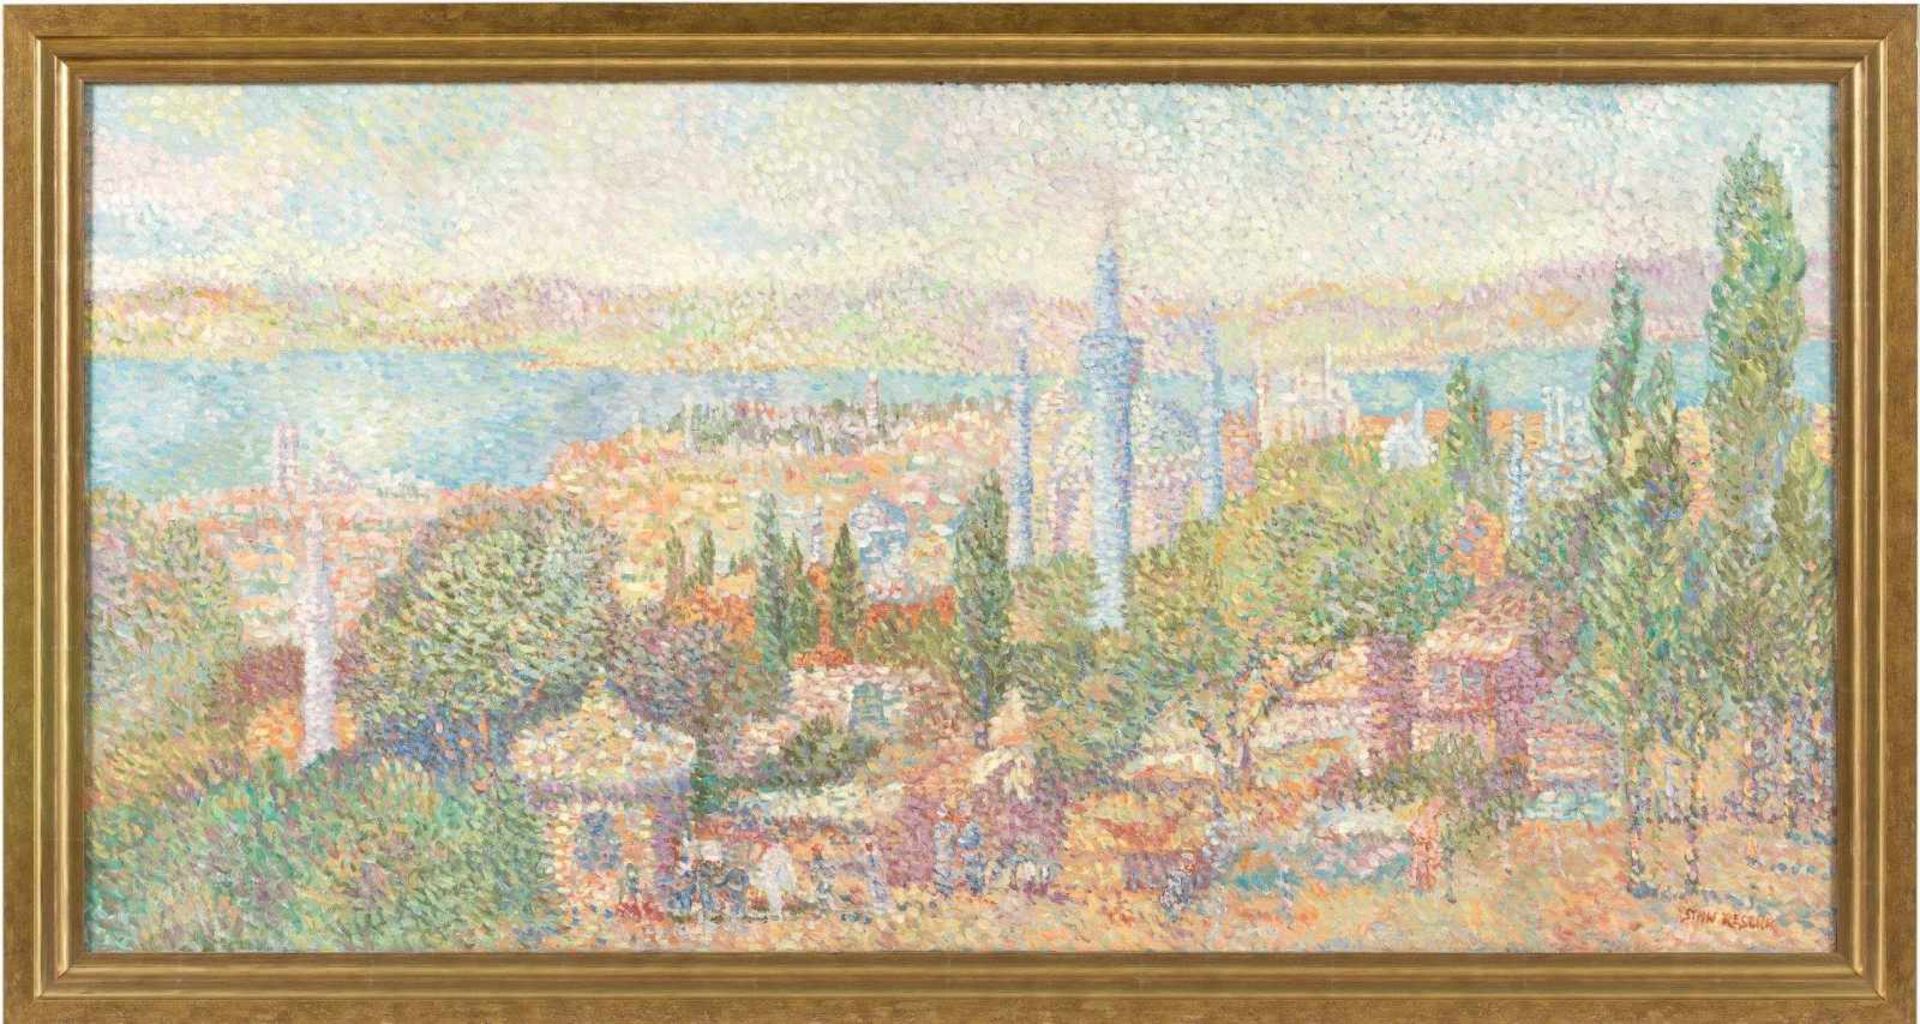 Reszka, Stan (geb. 1924, lebt in Paris) Istanbul 1951.Pointilistische Stadtansicht. Sign. Lwd. 60×